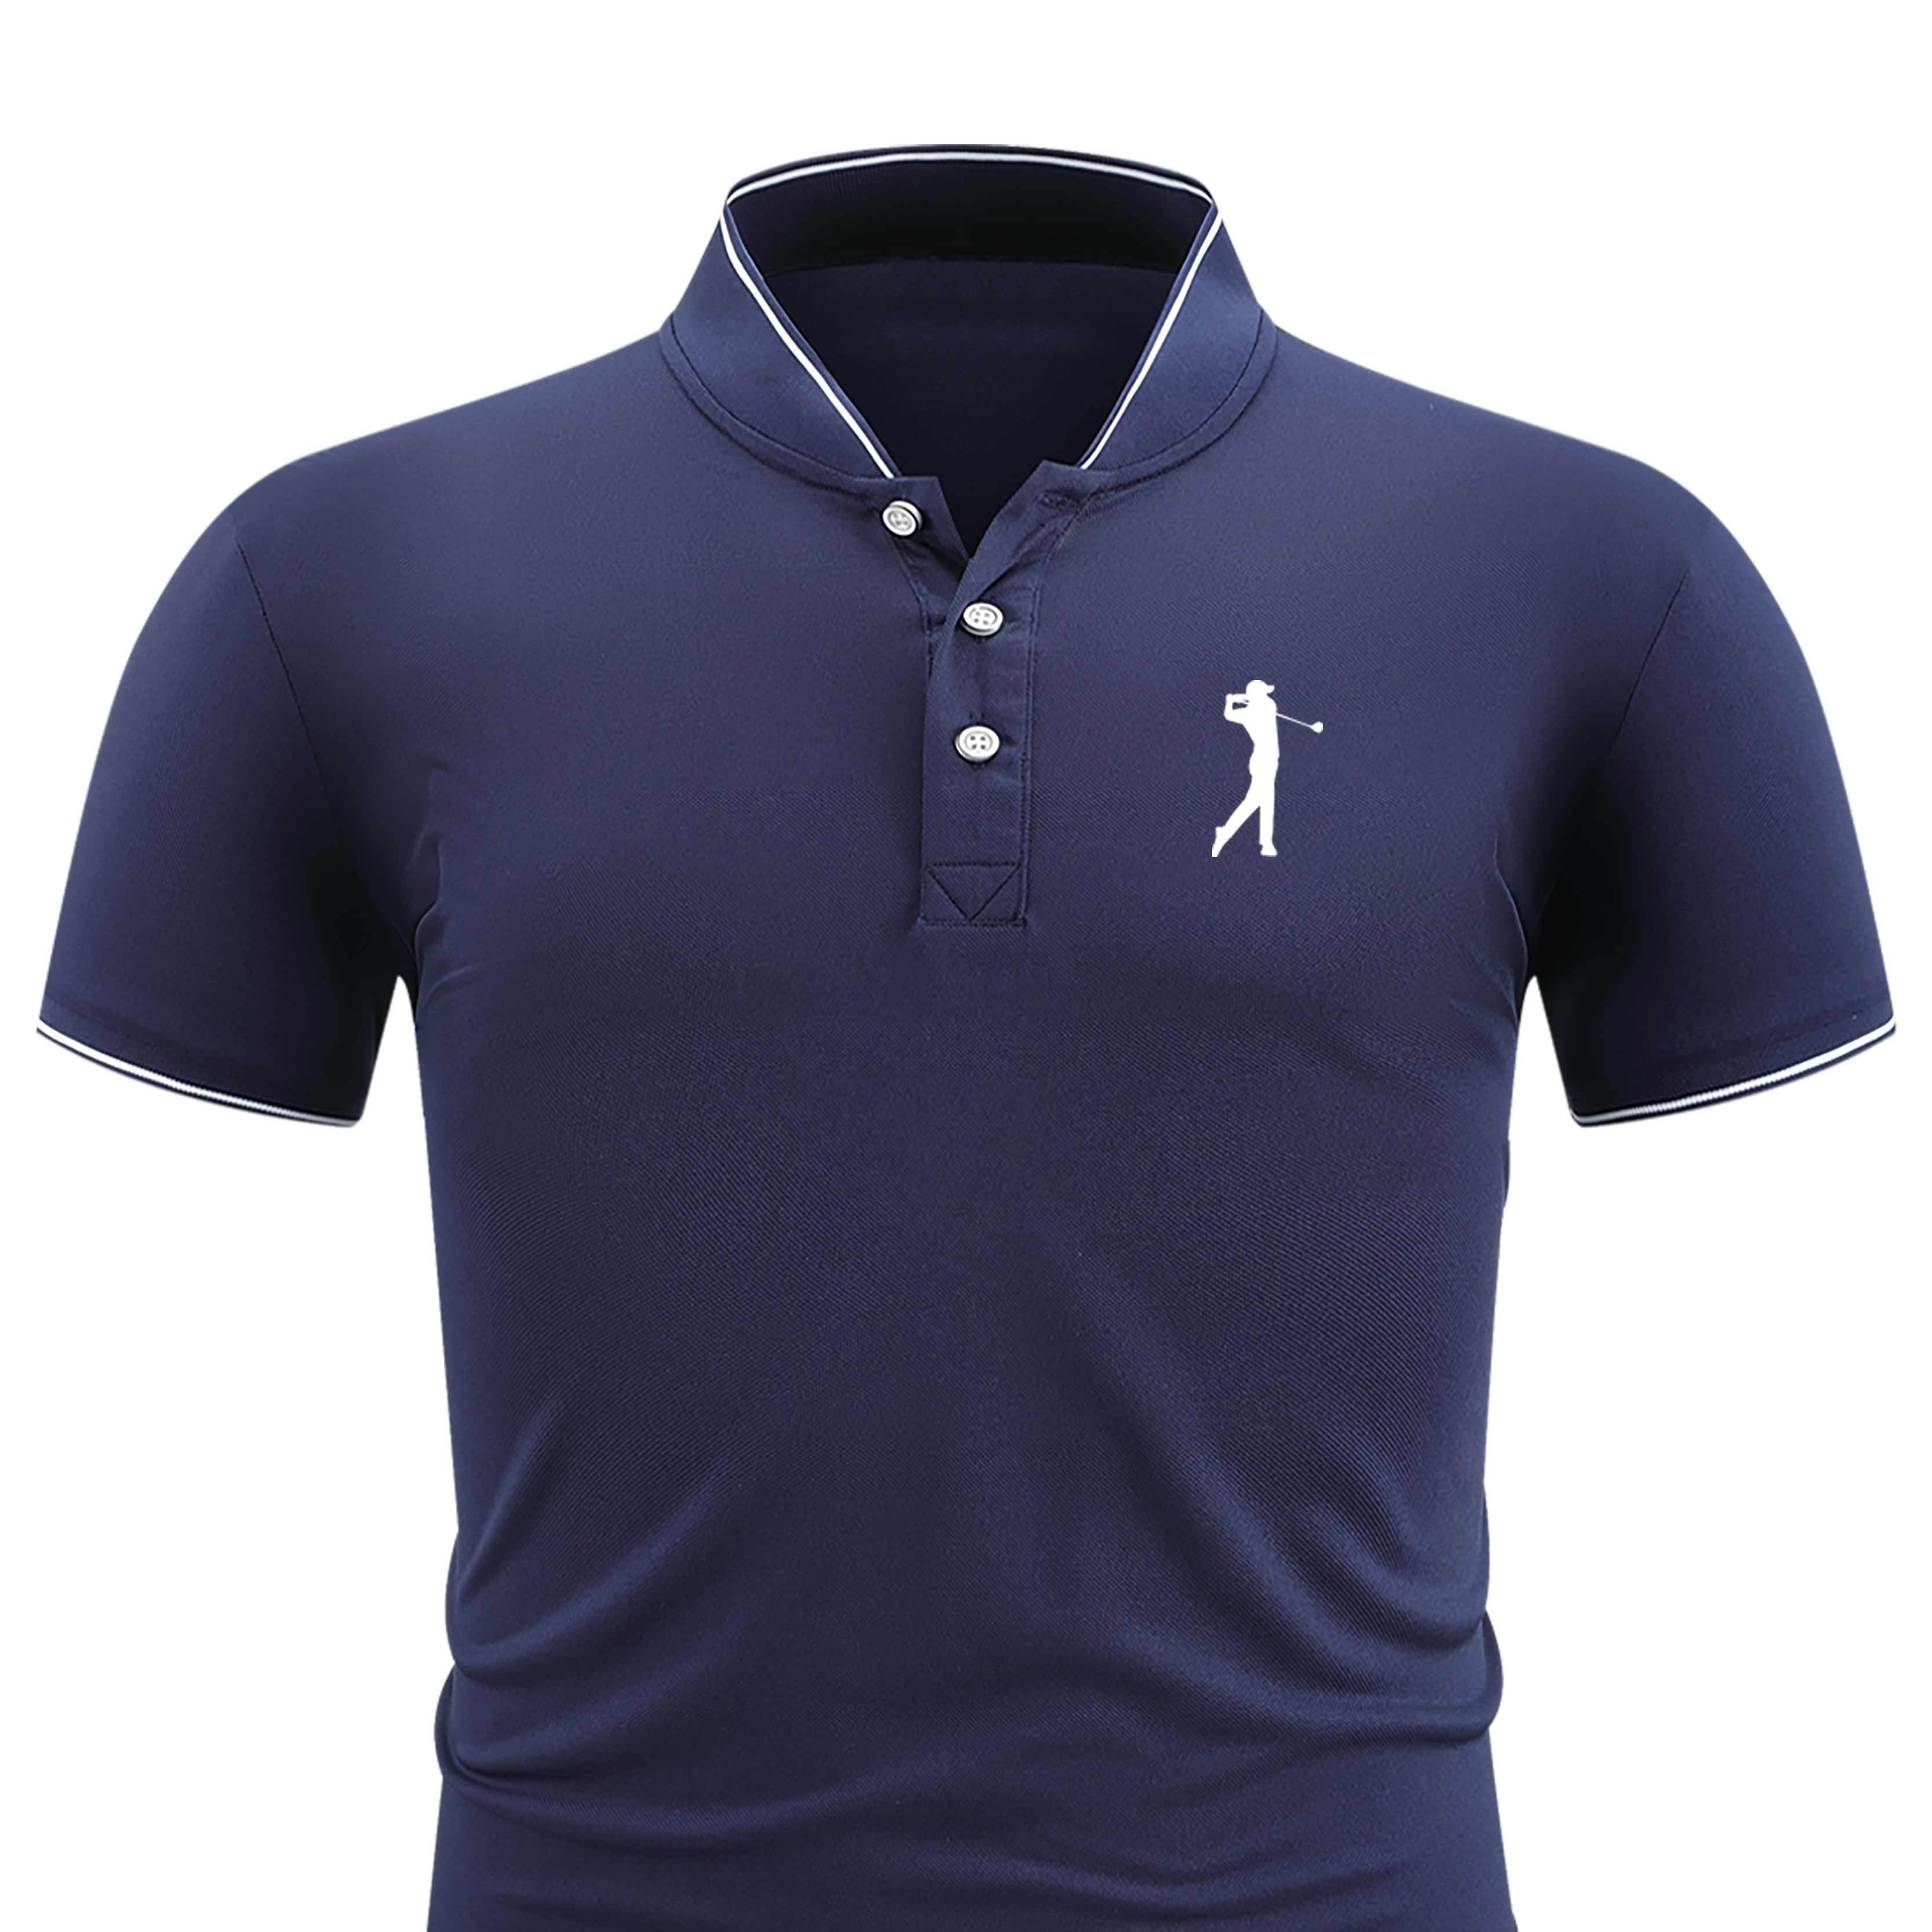 

Golf Man Print Men's Short Sleeve Polo Shirt, Men's Contrast Binding Shirt For Summer